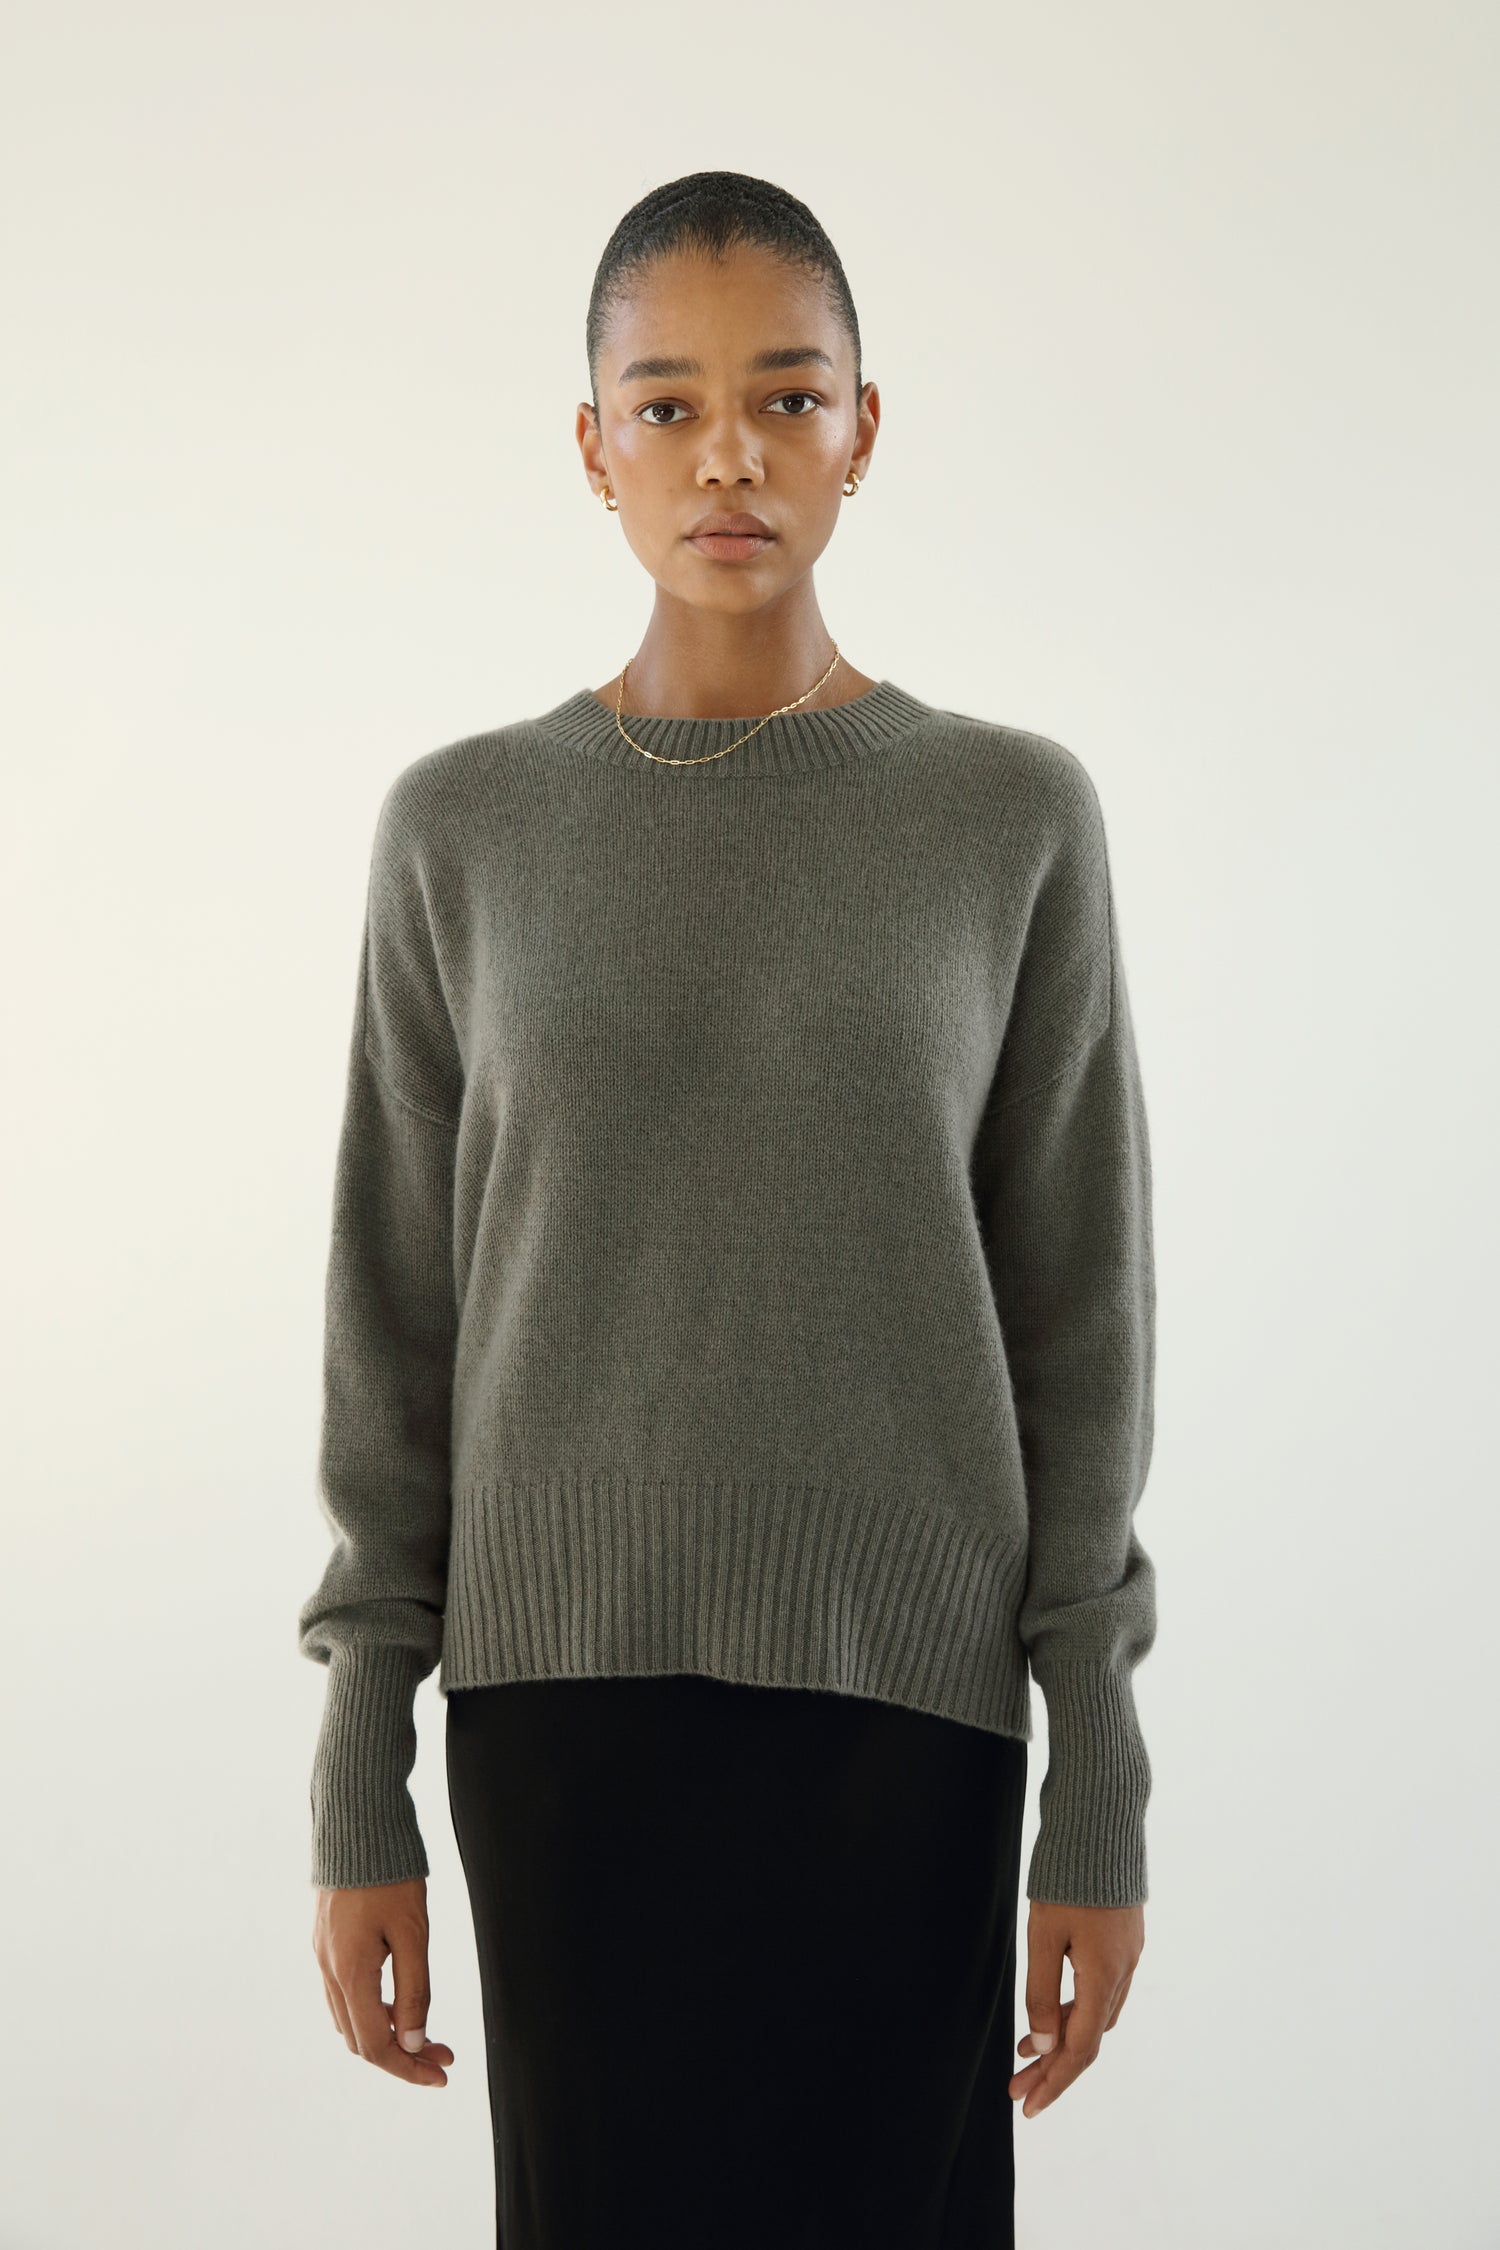 Mica Crewneck Sweater, khaki